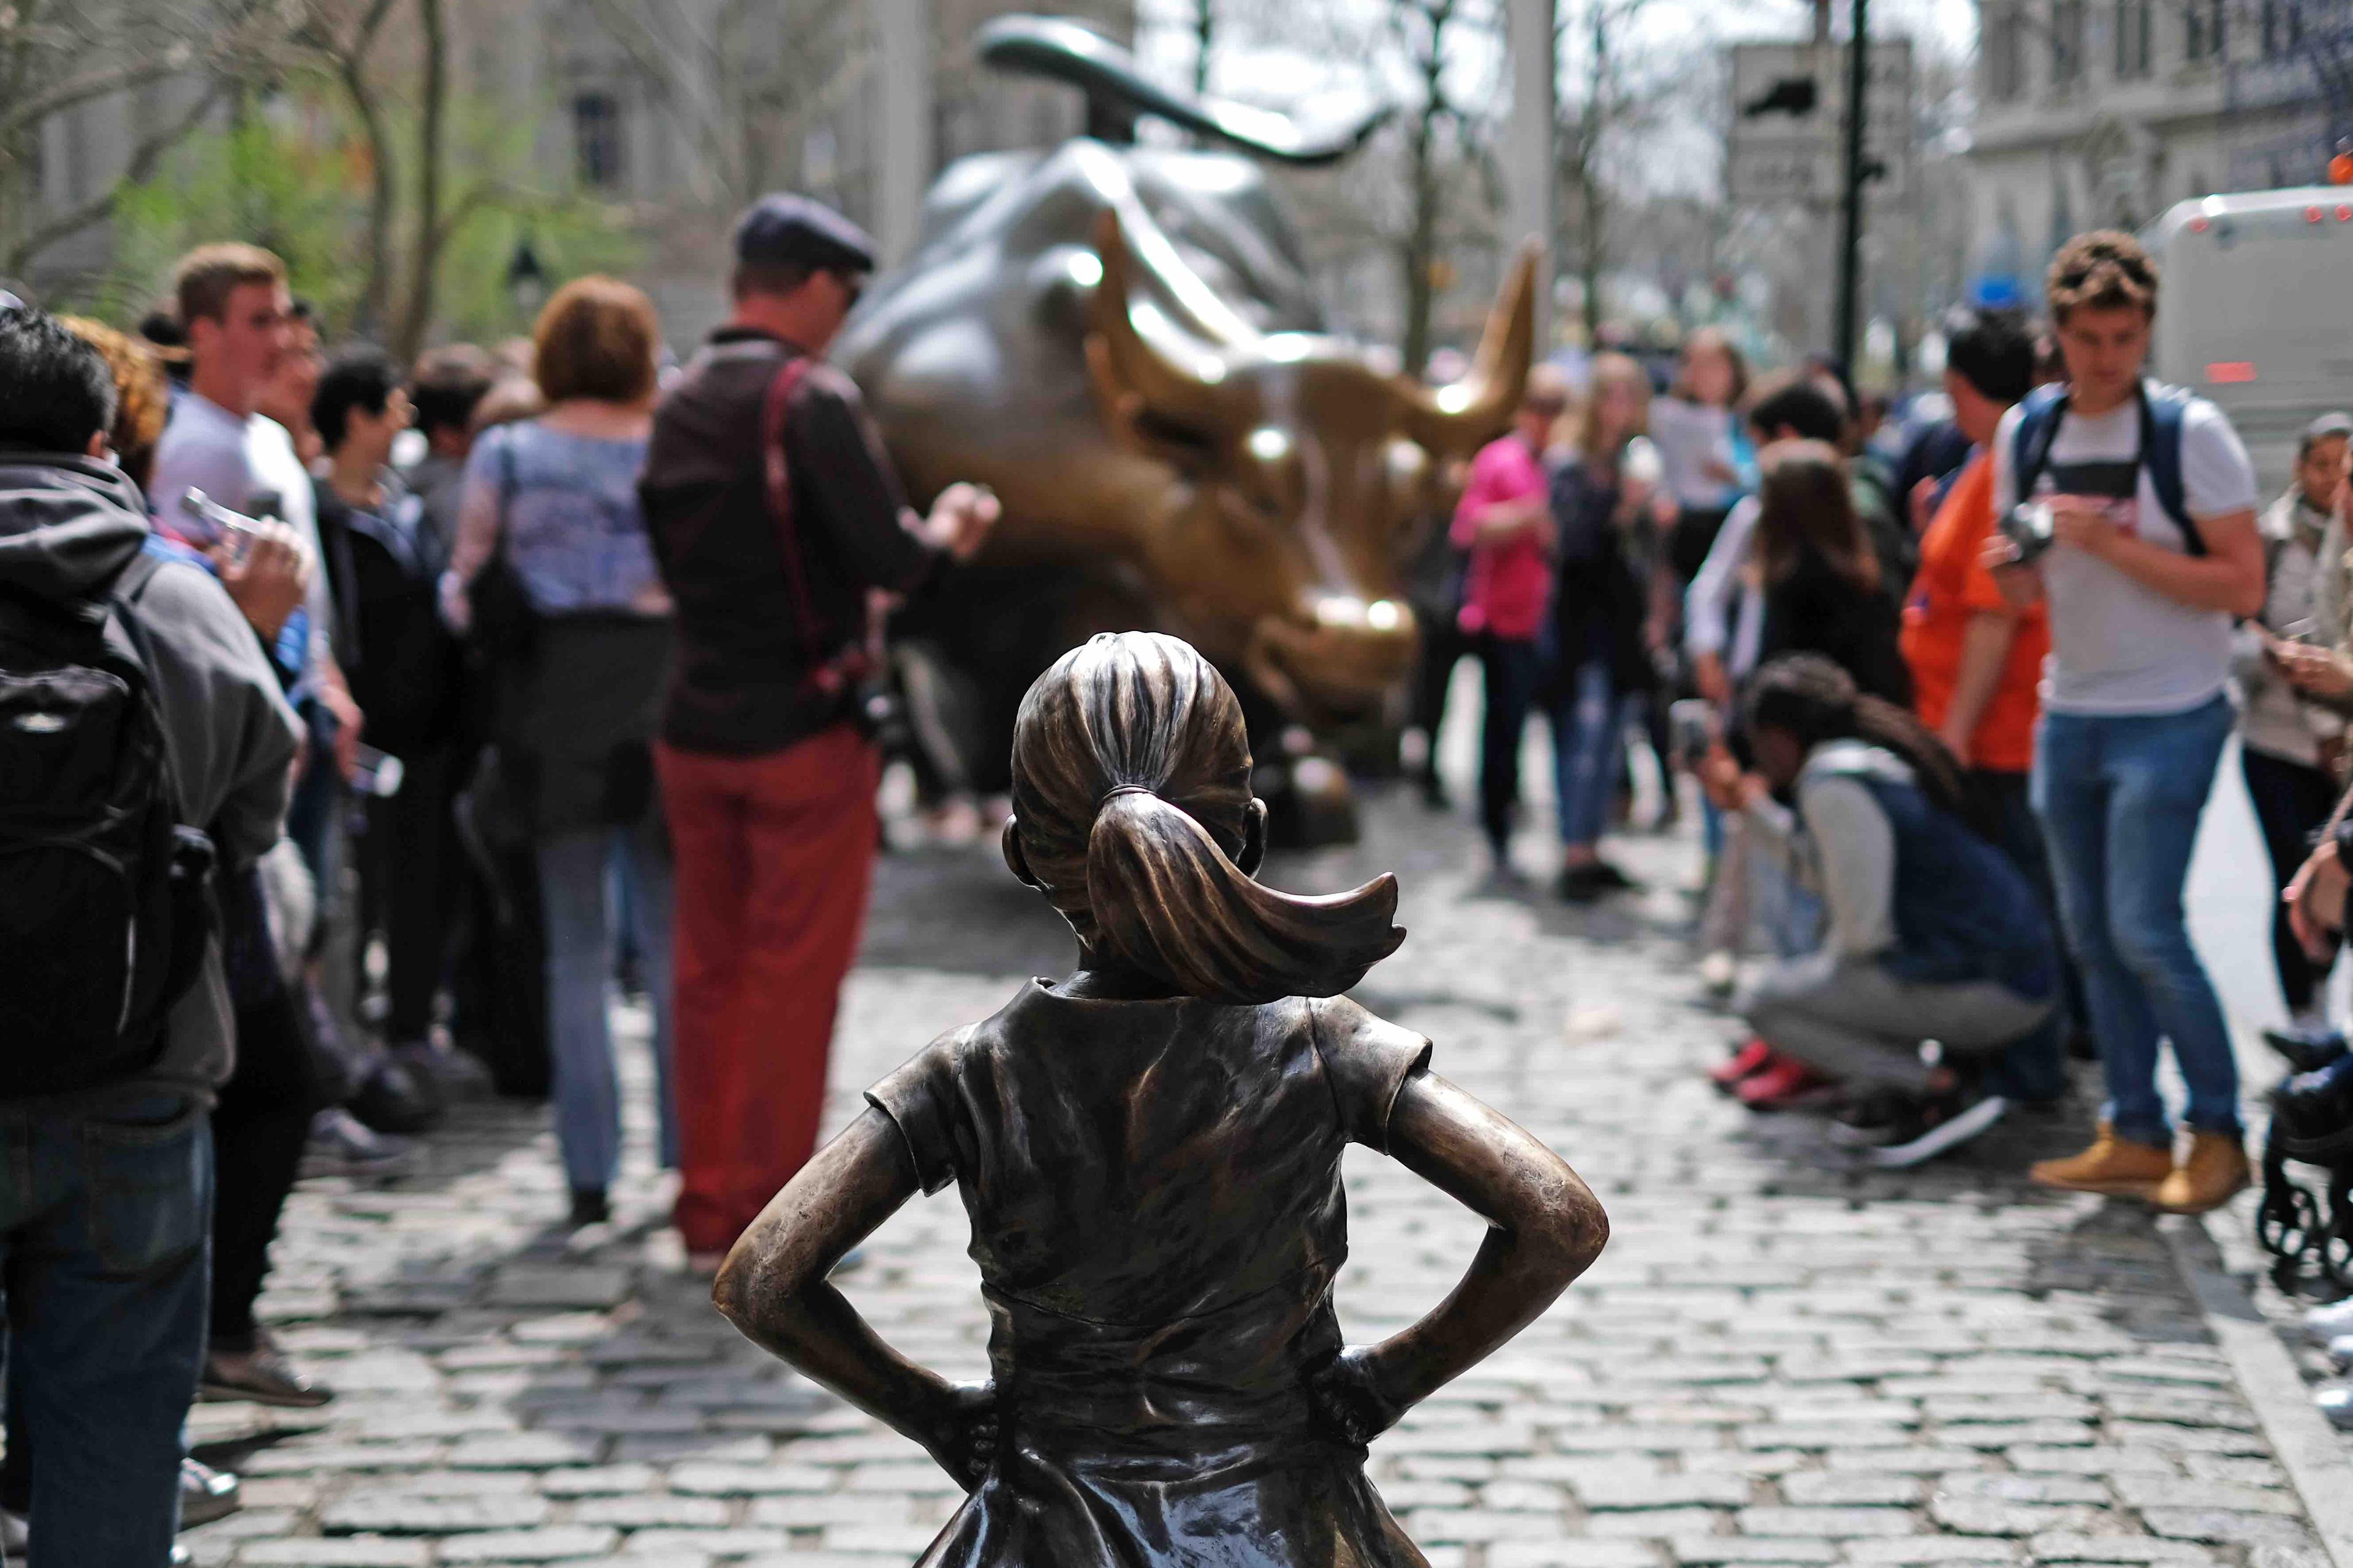 Ustawiona na placu Instalacja artystyczna, przedstawiająca figurę dziewczynki, która stoi na drodze szarżującego byka. Dookoła stoją ludzie i robią zdjęcia.